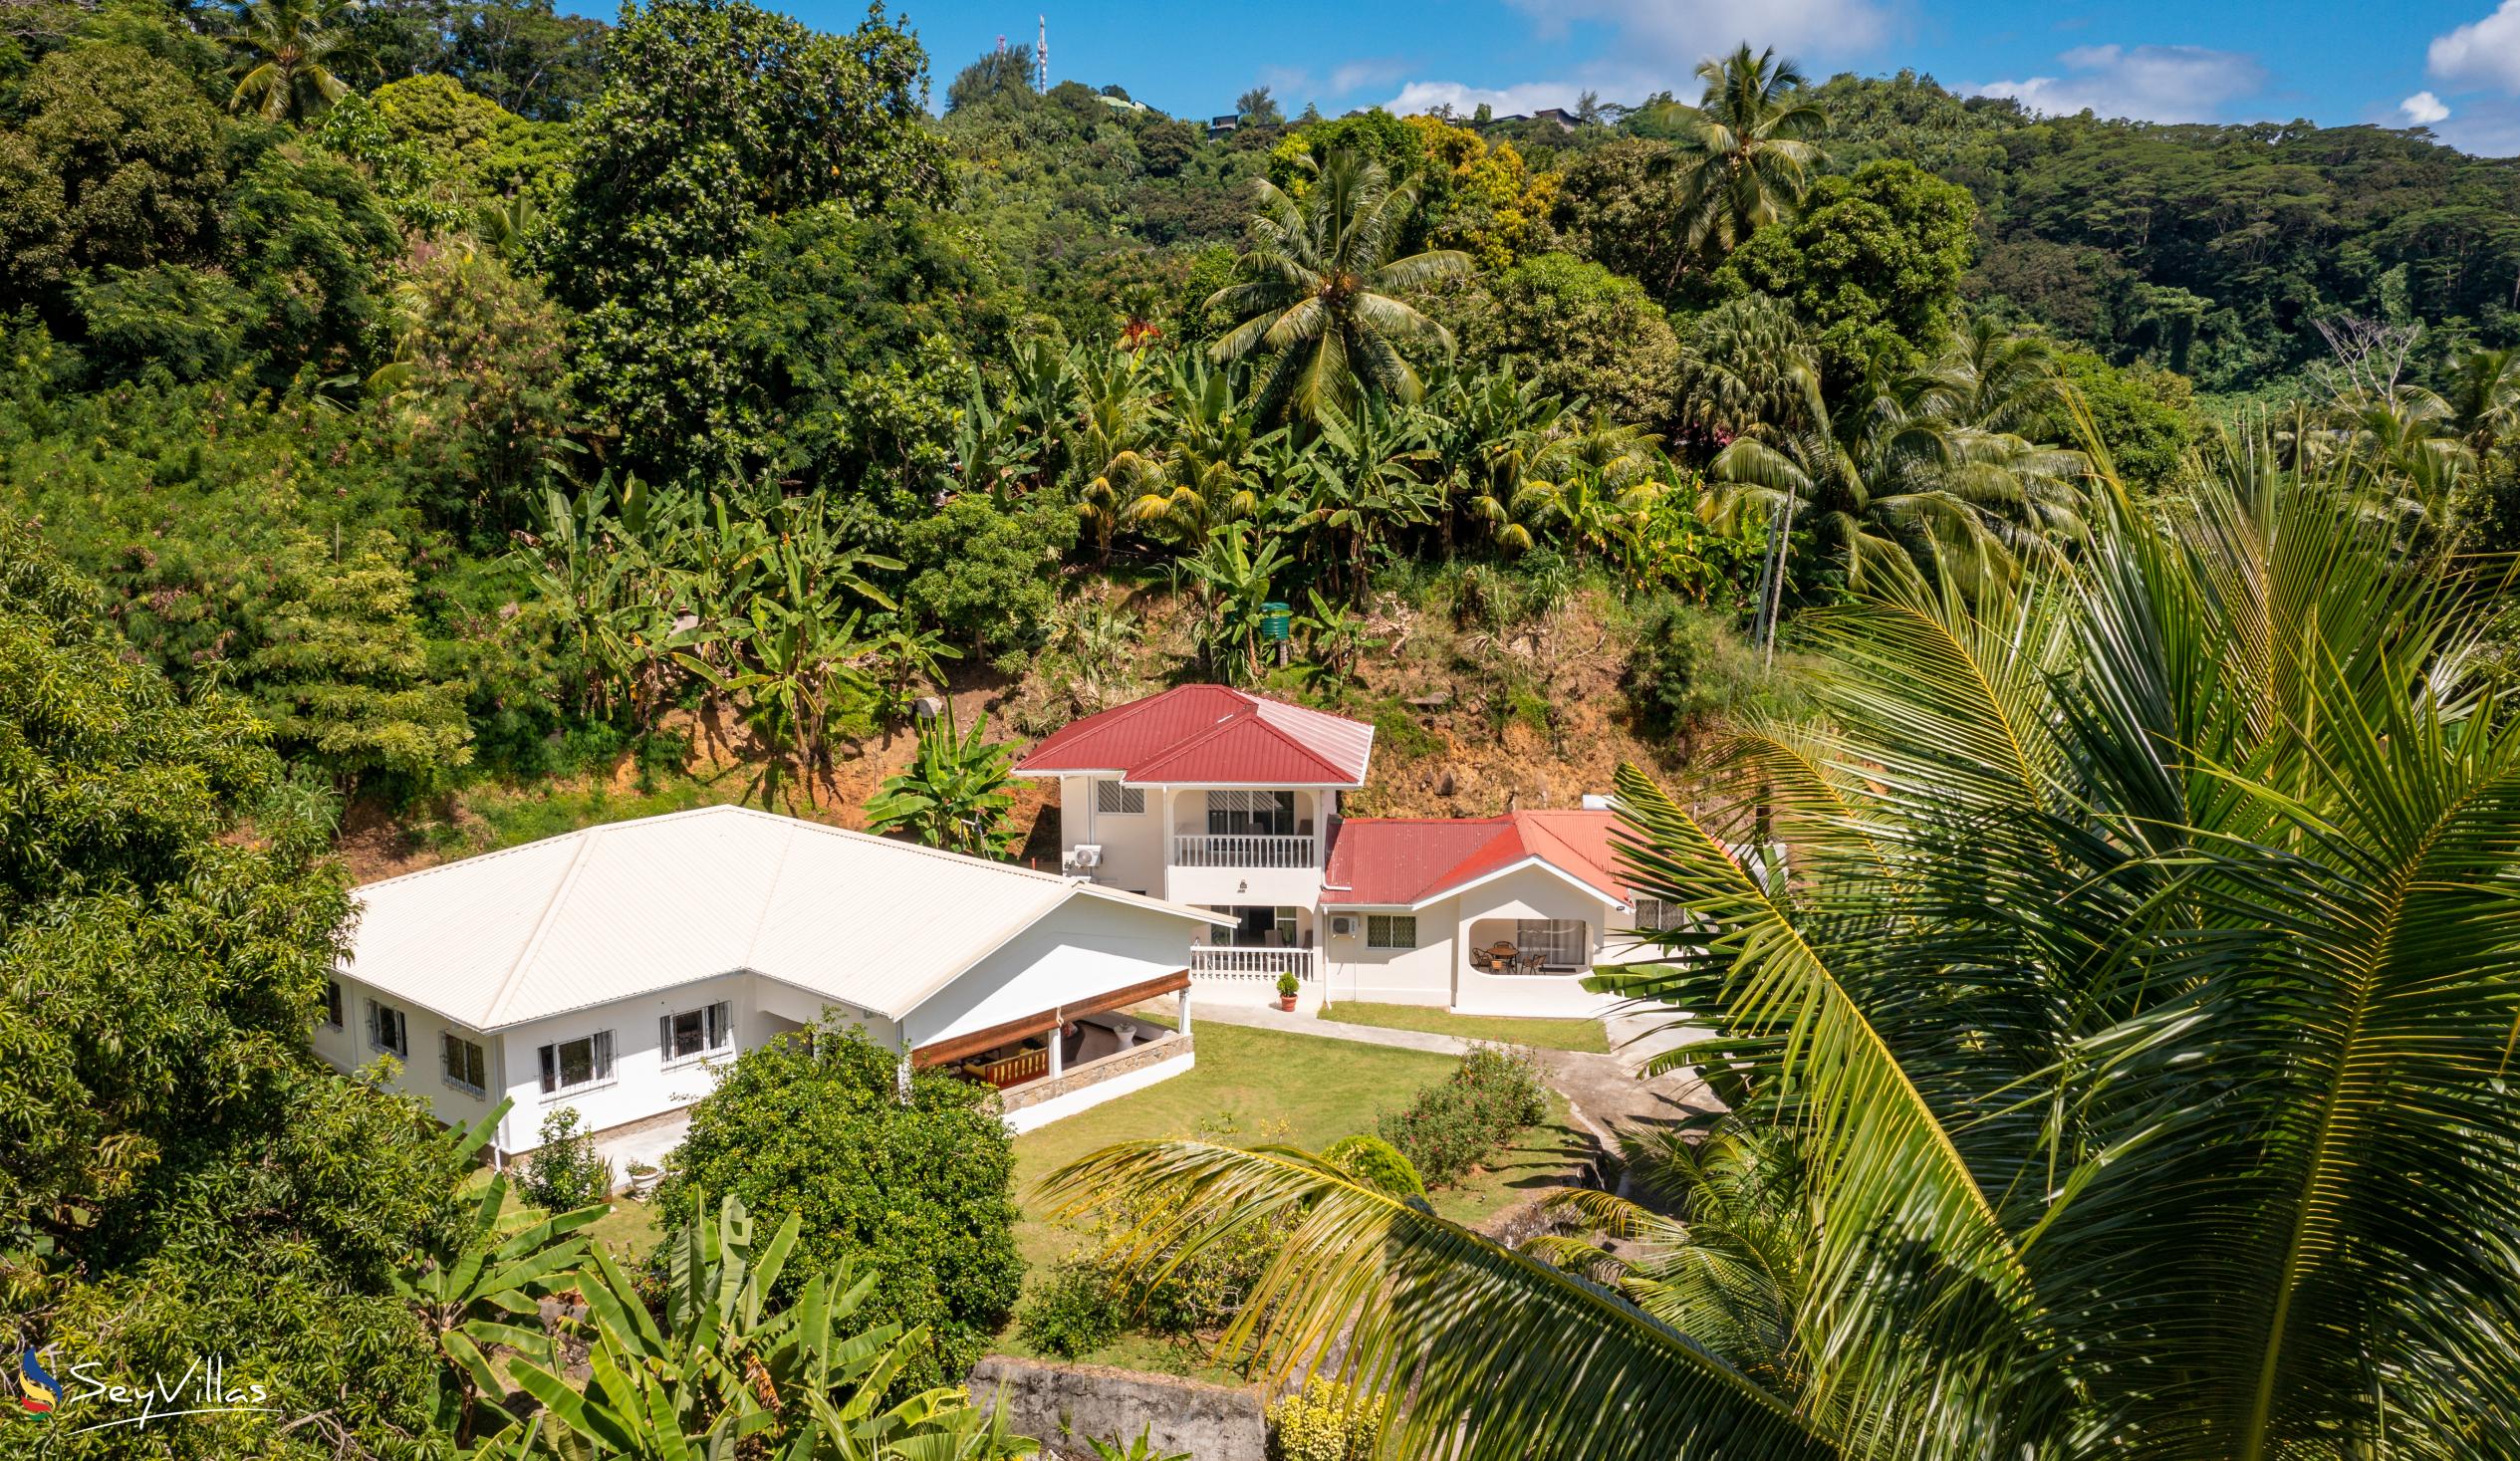 Foto 4: Paul's Residence - Extérieur - Mahé (Seychelles)